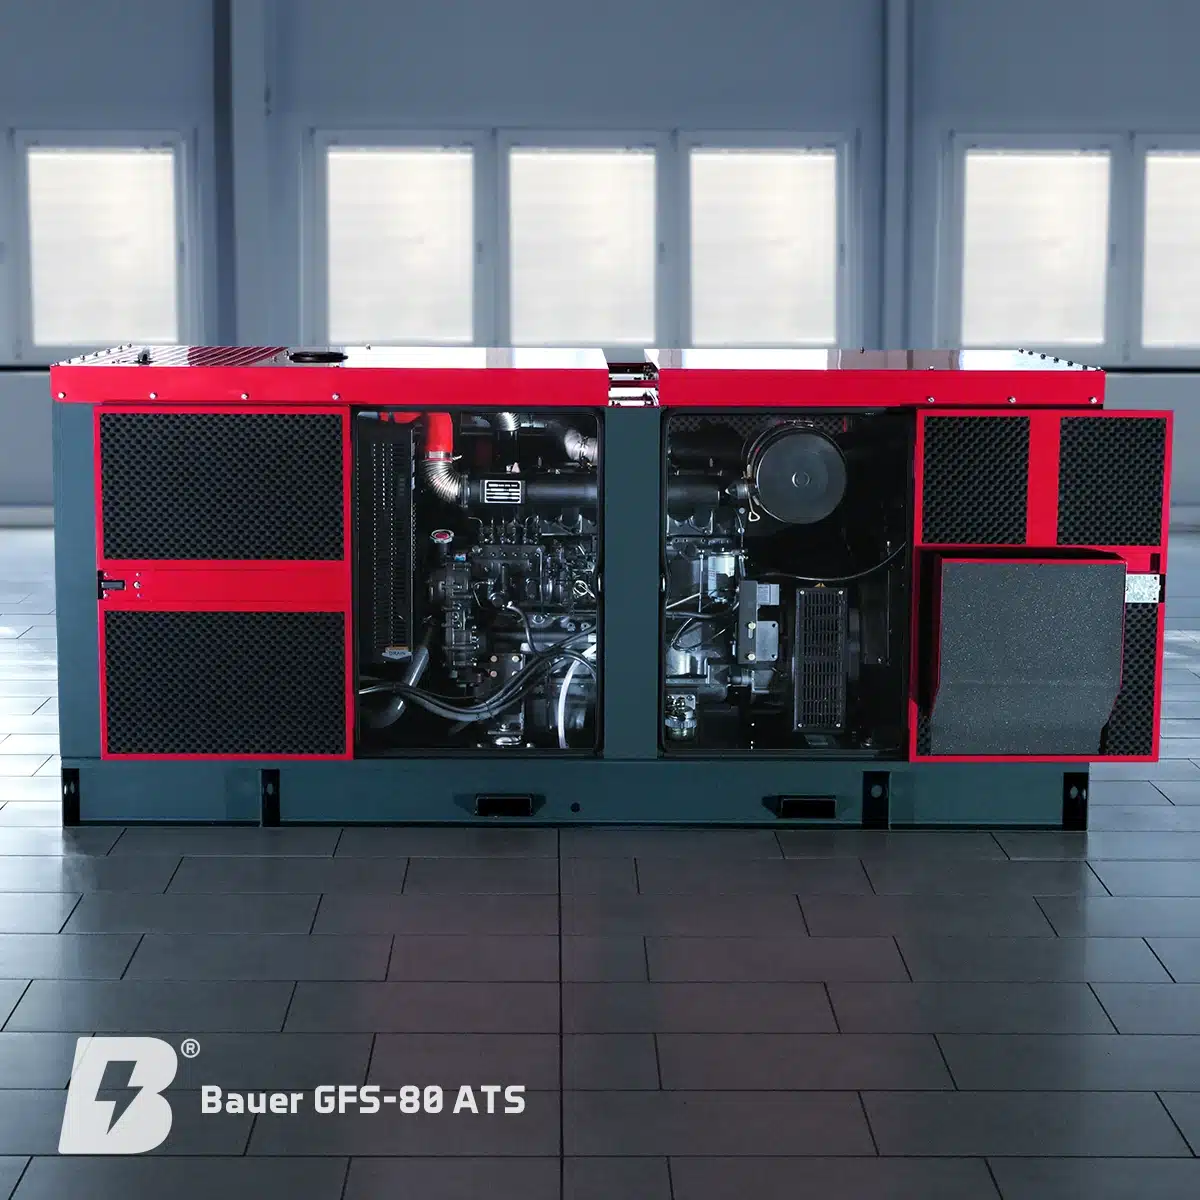 Bauer Generatoren, Bauer GFS-80 ATS, notstromaggregat diesel, generator, stromerzeuger, notstrom-generatoren, blackout, dunkelflaute, Stromausfall